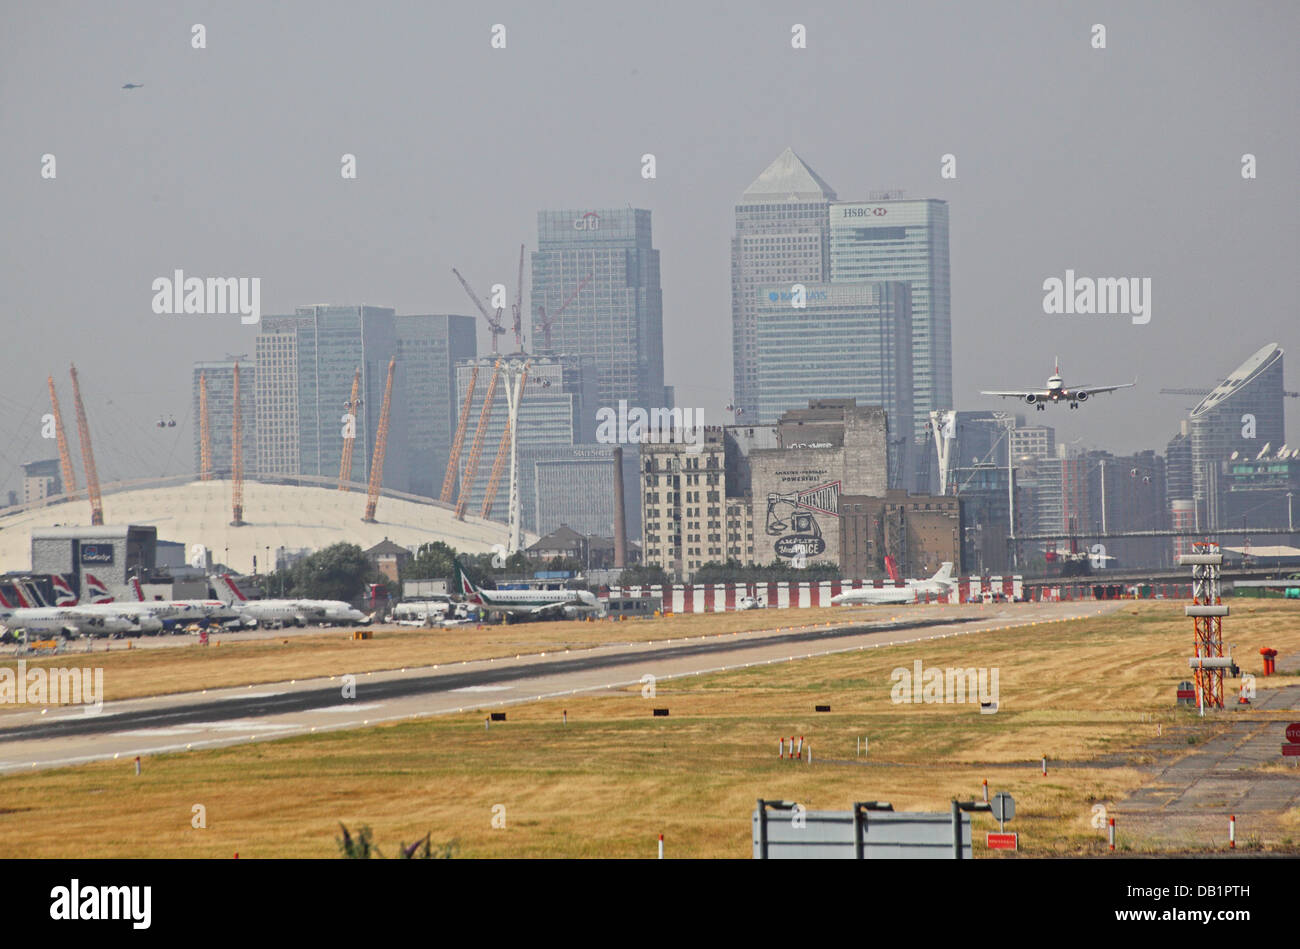 Un jet de passagers de British Airways atterrit à l'aéroport de London City. Canary Wharf et le dôme du millénaire en arrière-plan Banque D'Images